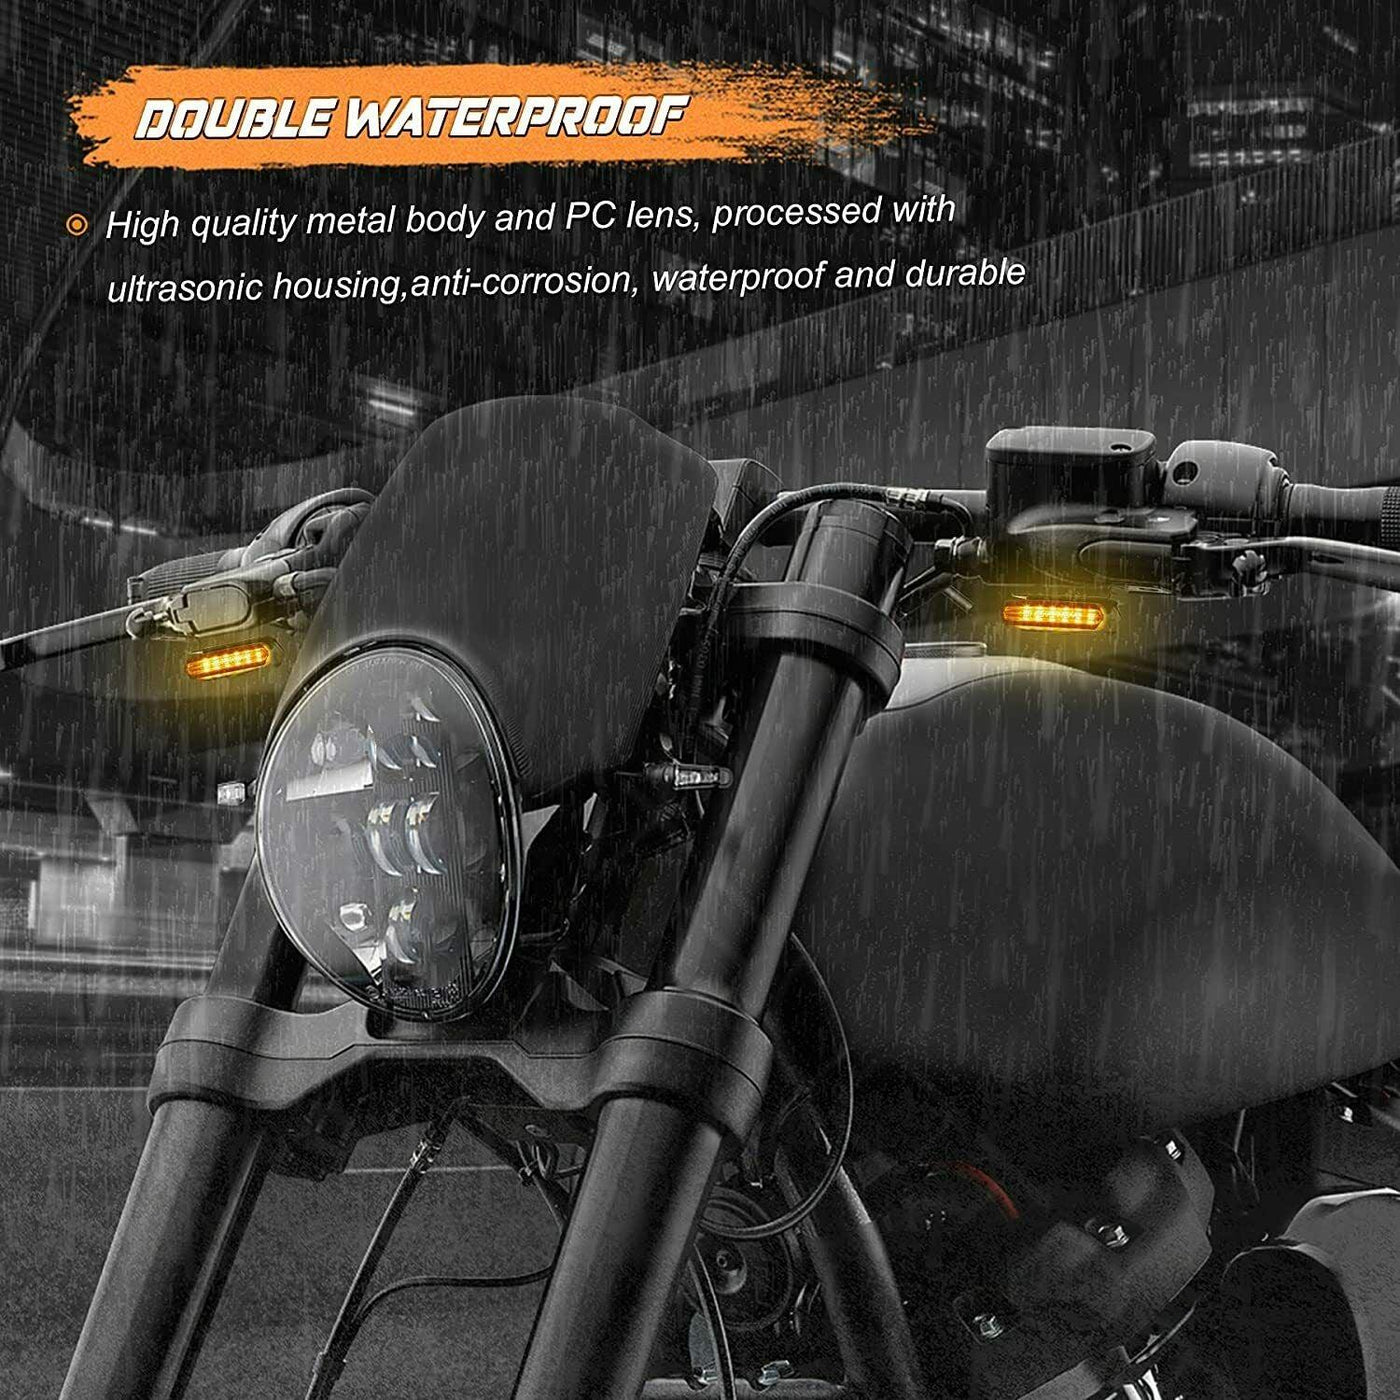 2X Chrome Handlebar LED Turn Signals Blinker Light For Harley Sportster 1200 883 - Moto Life Products